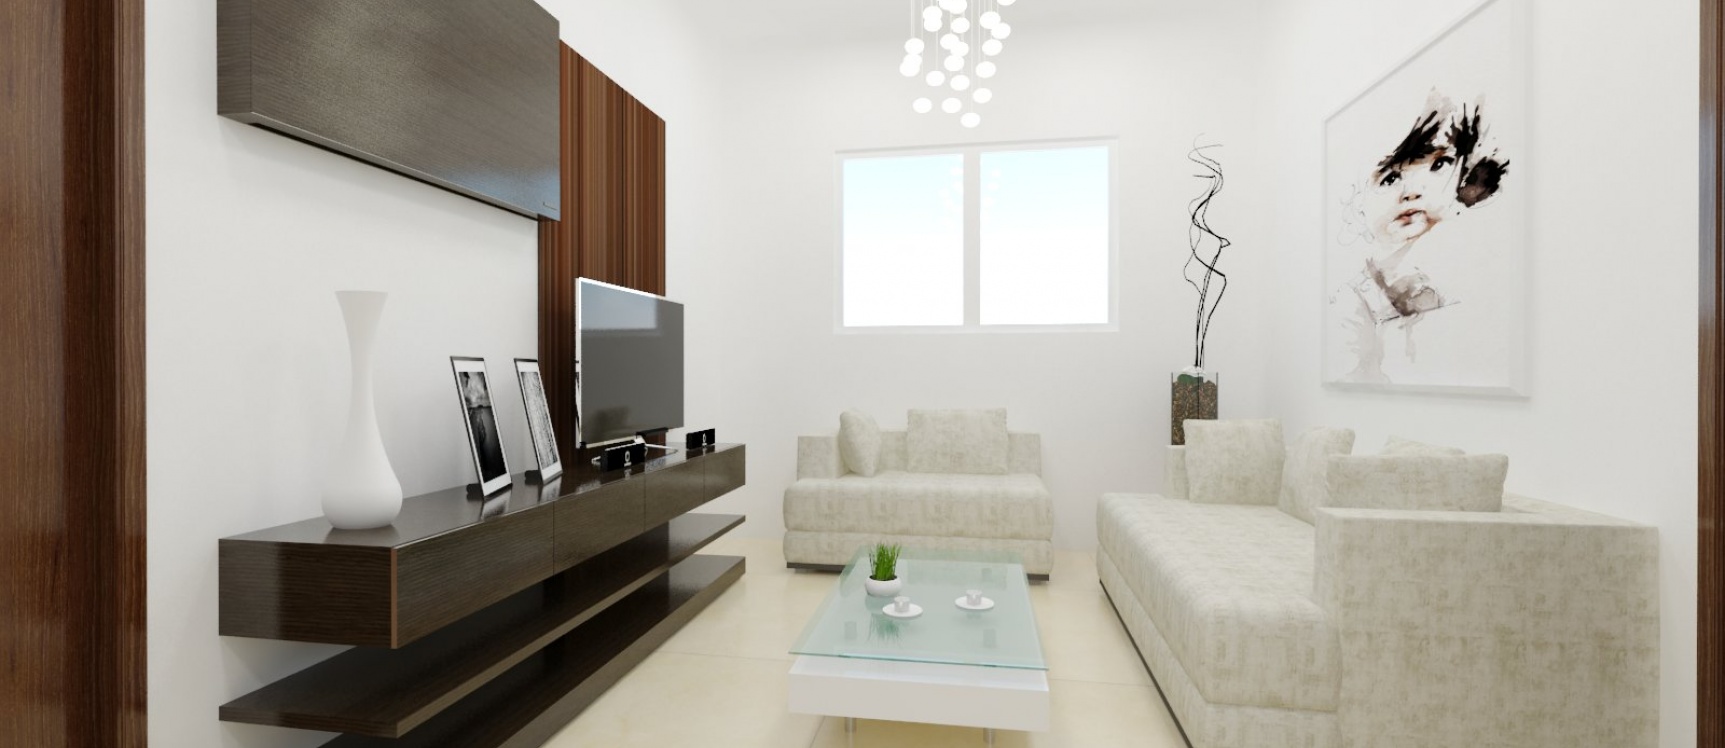 GeoBienes - Apartamento de dos dormitorios en Costa Blanca - Plusvalia Guayaquil Casas de venta y alquiler Inmobiliaria Ecuador